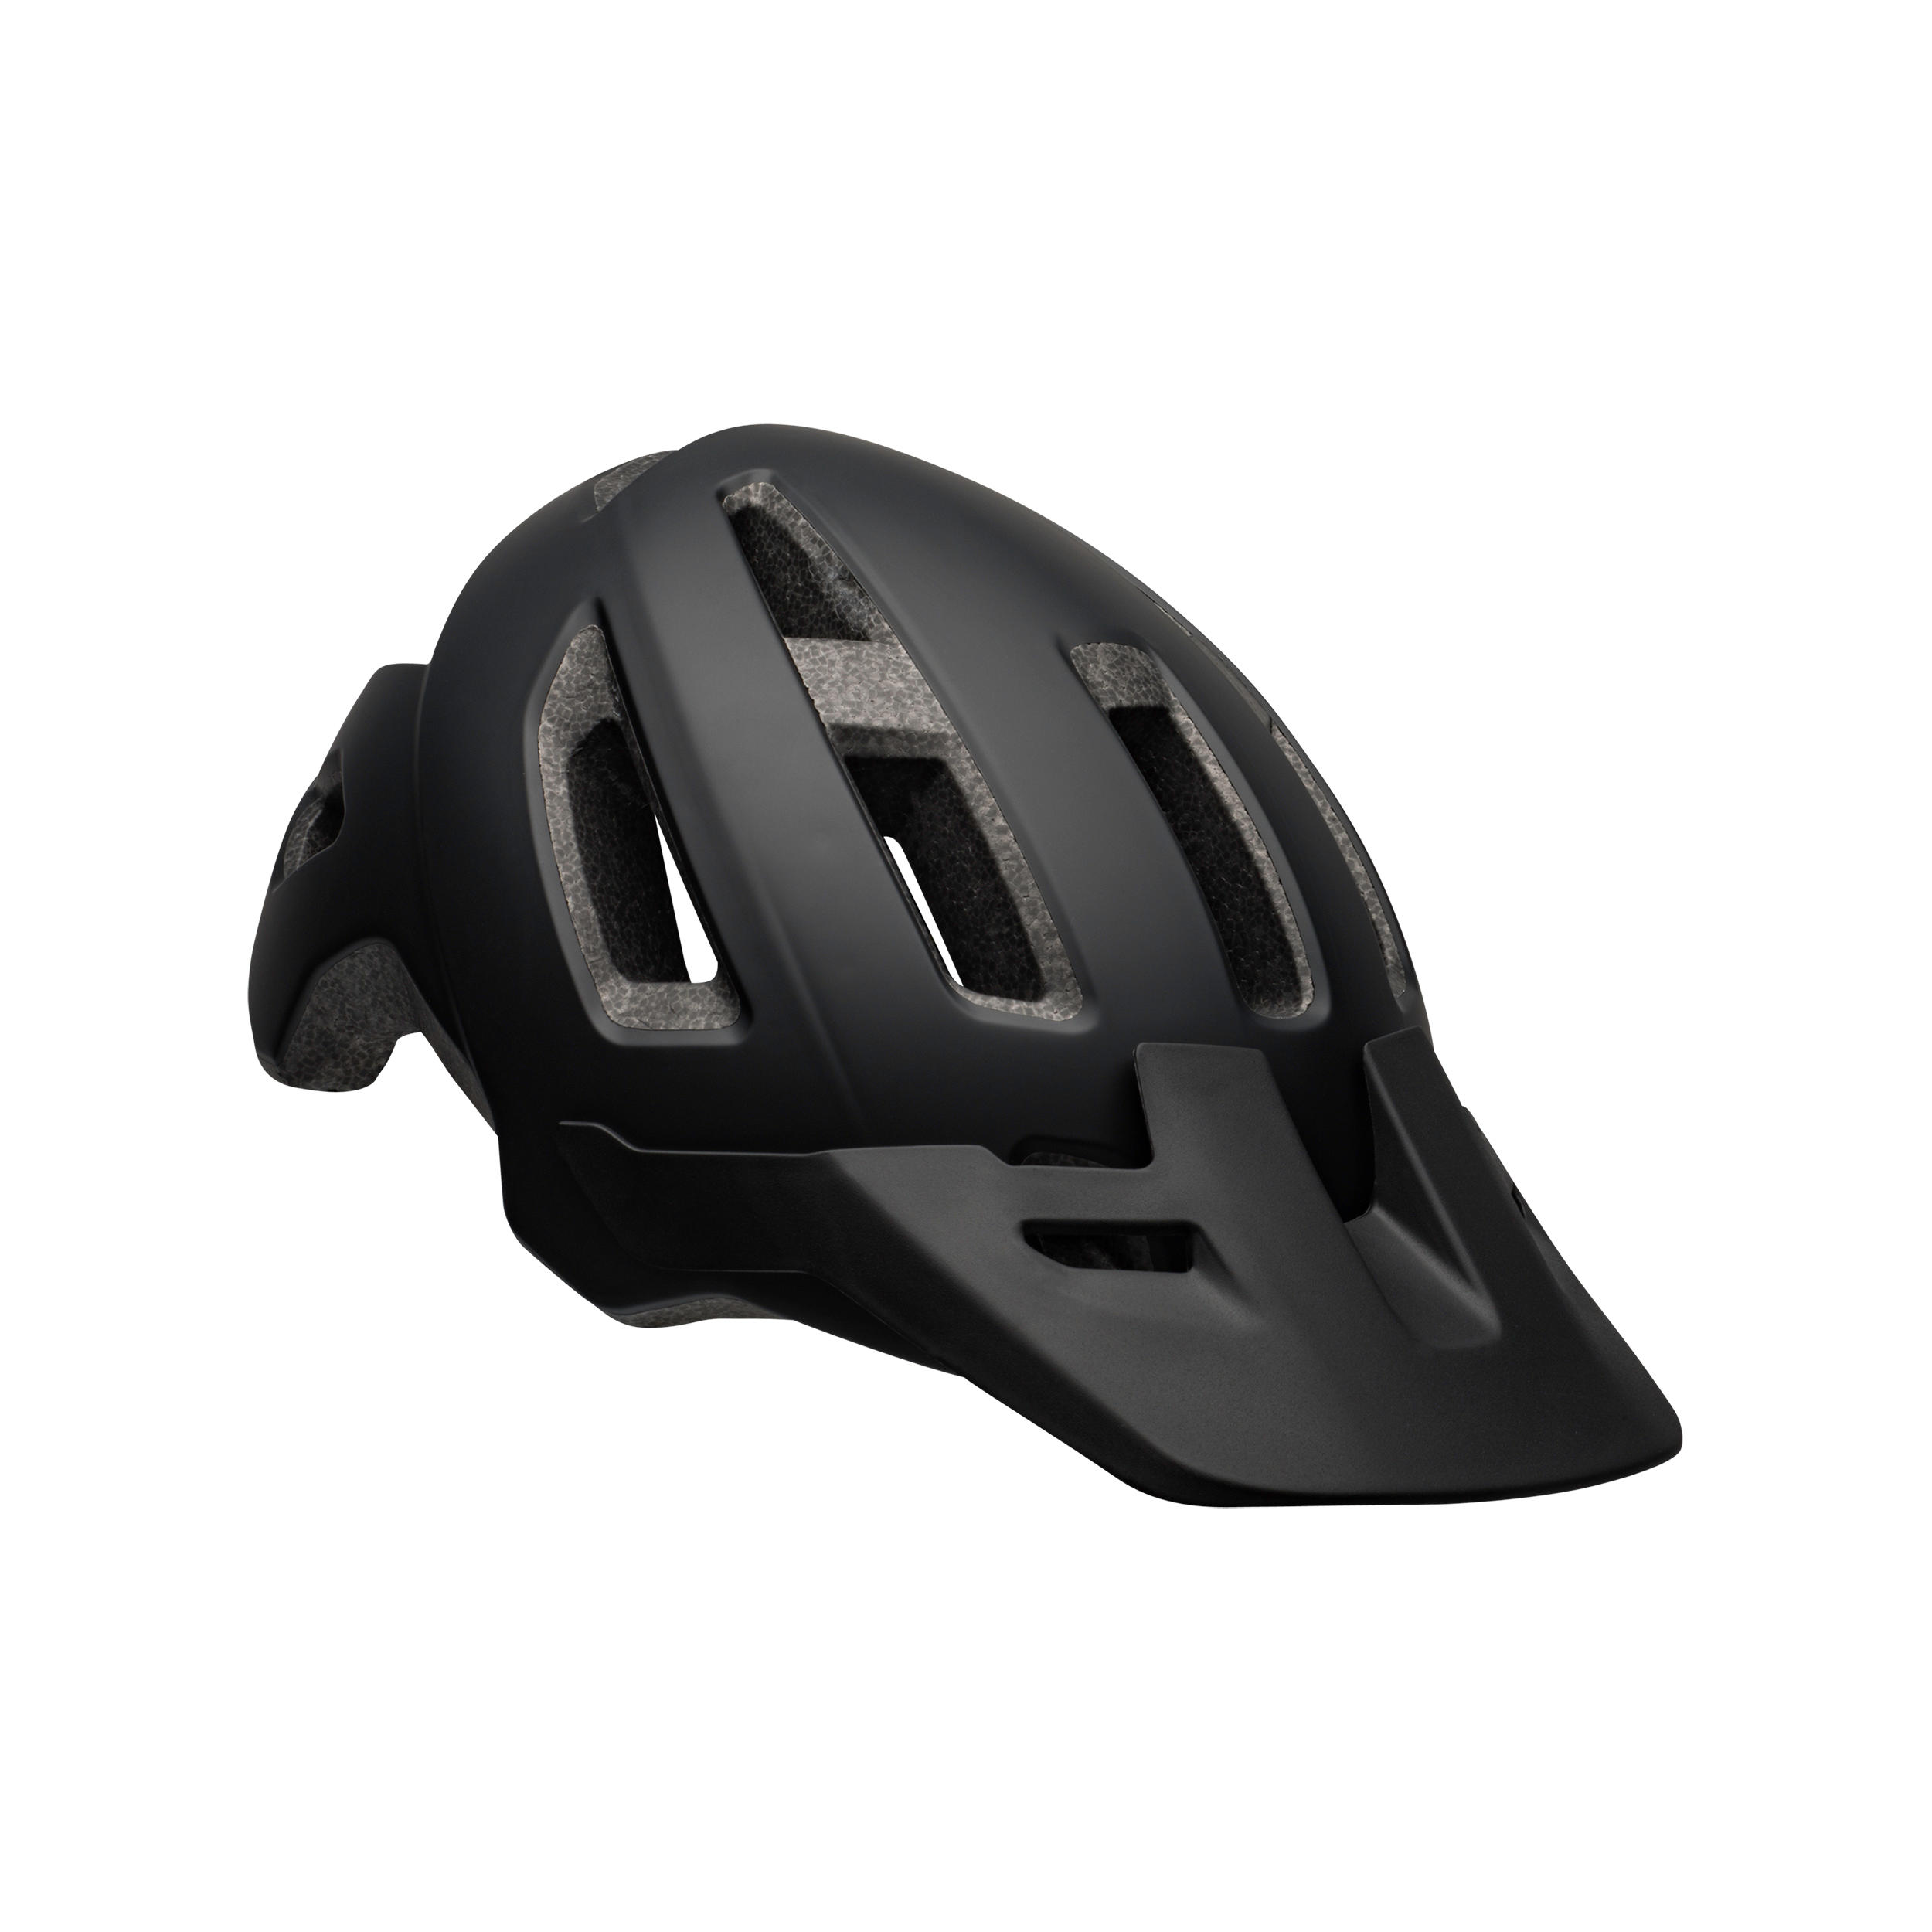 bell mountain bike helmets